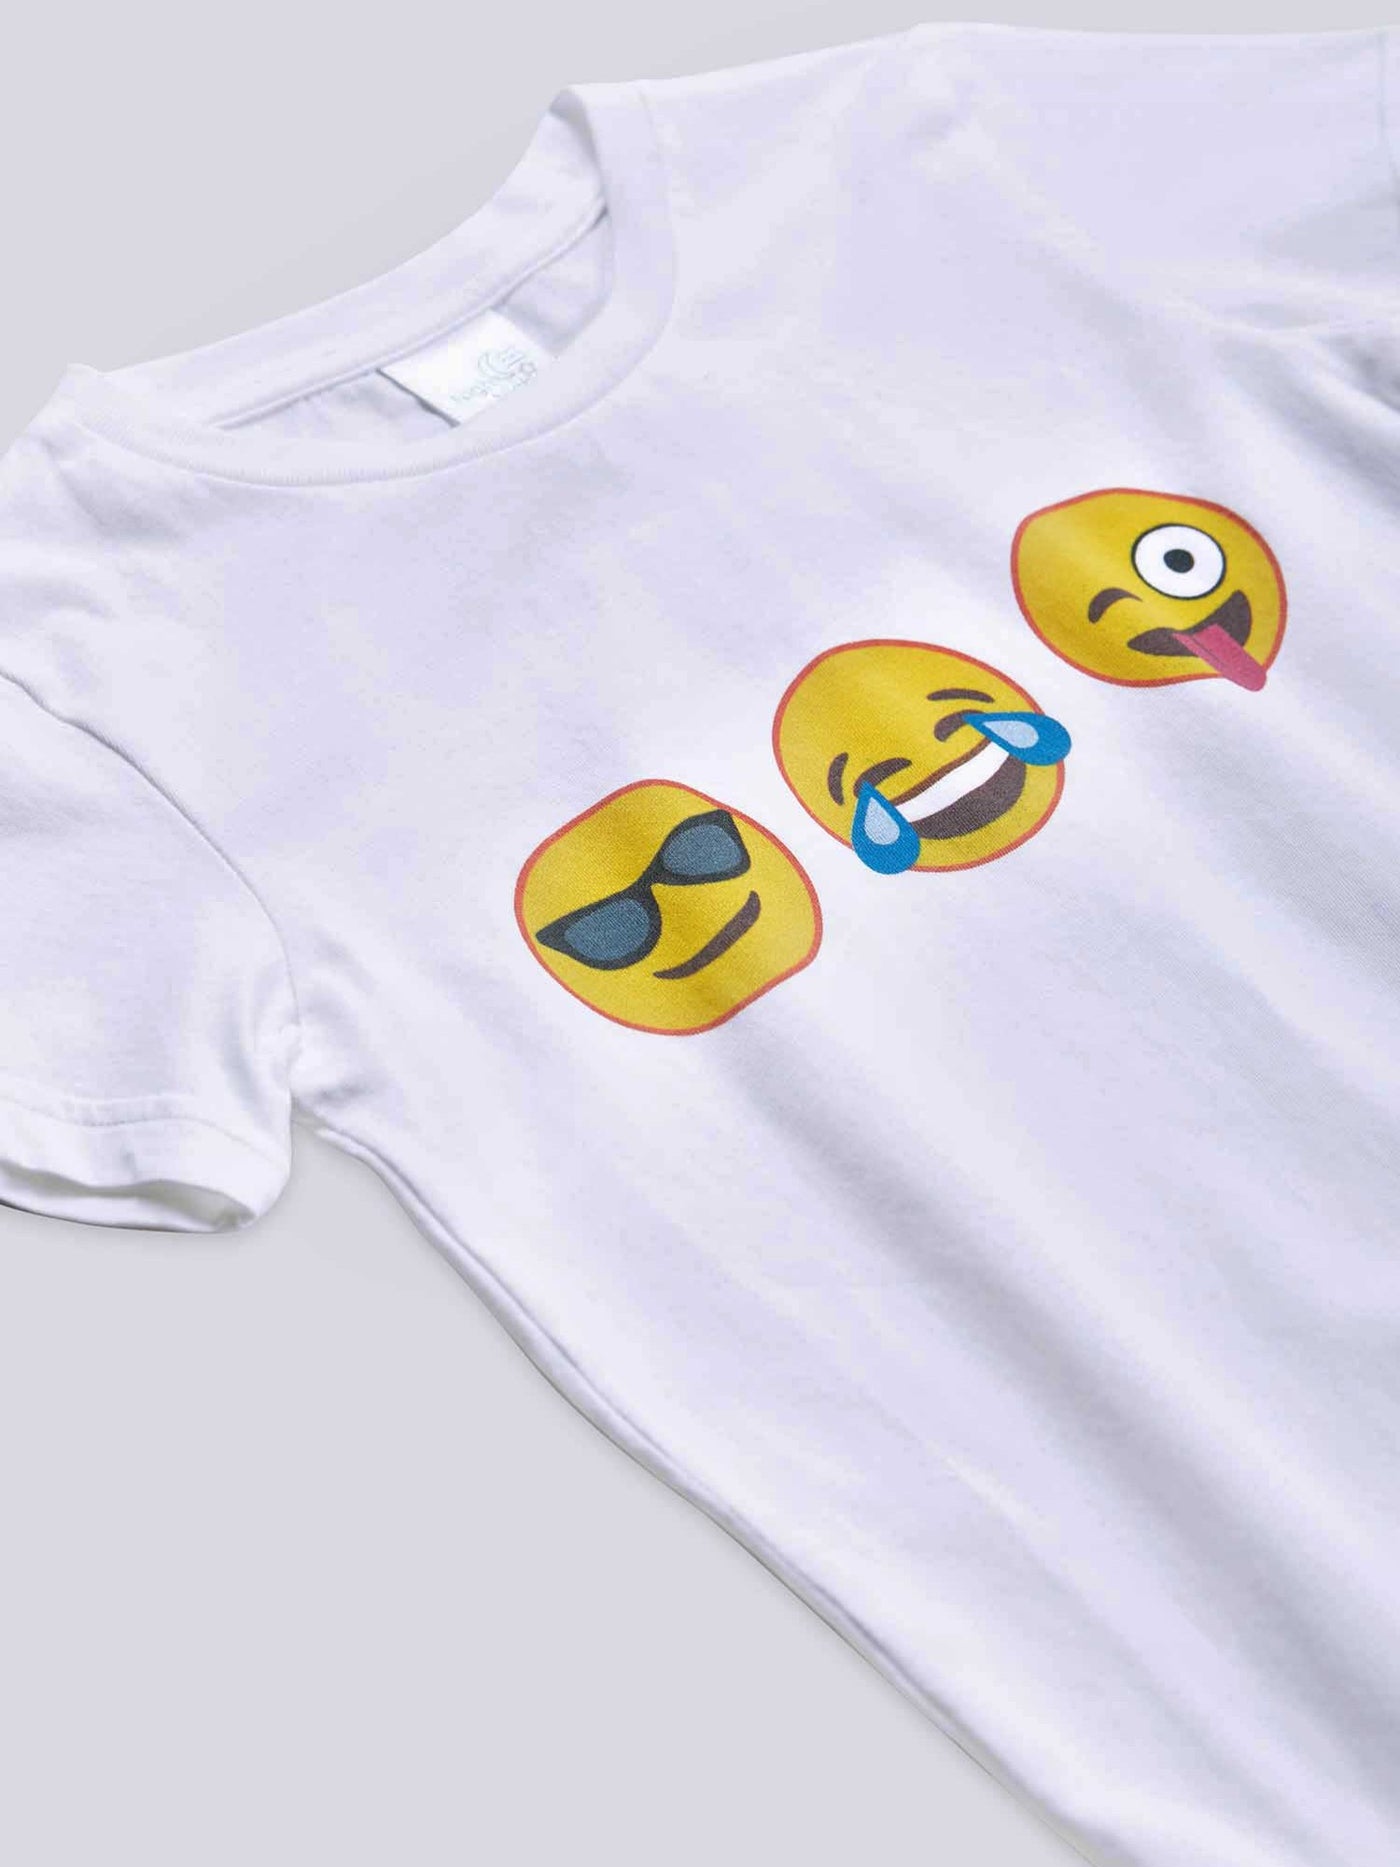 Emoji T-shirt PJ Set